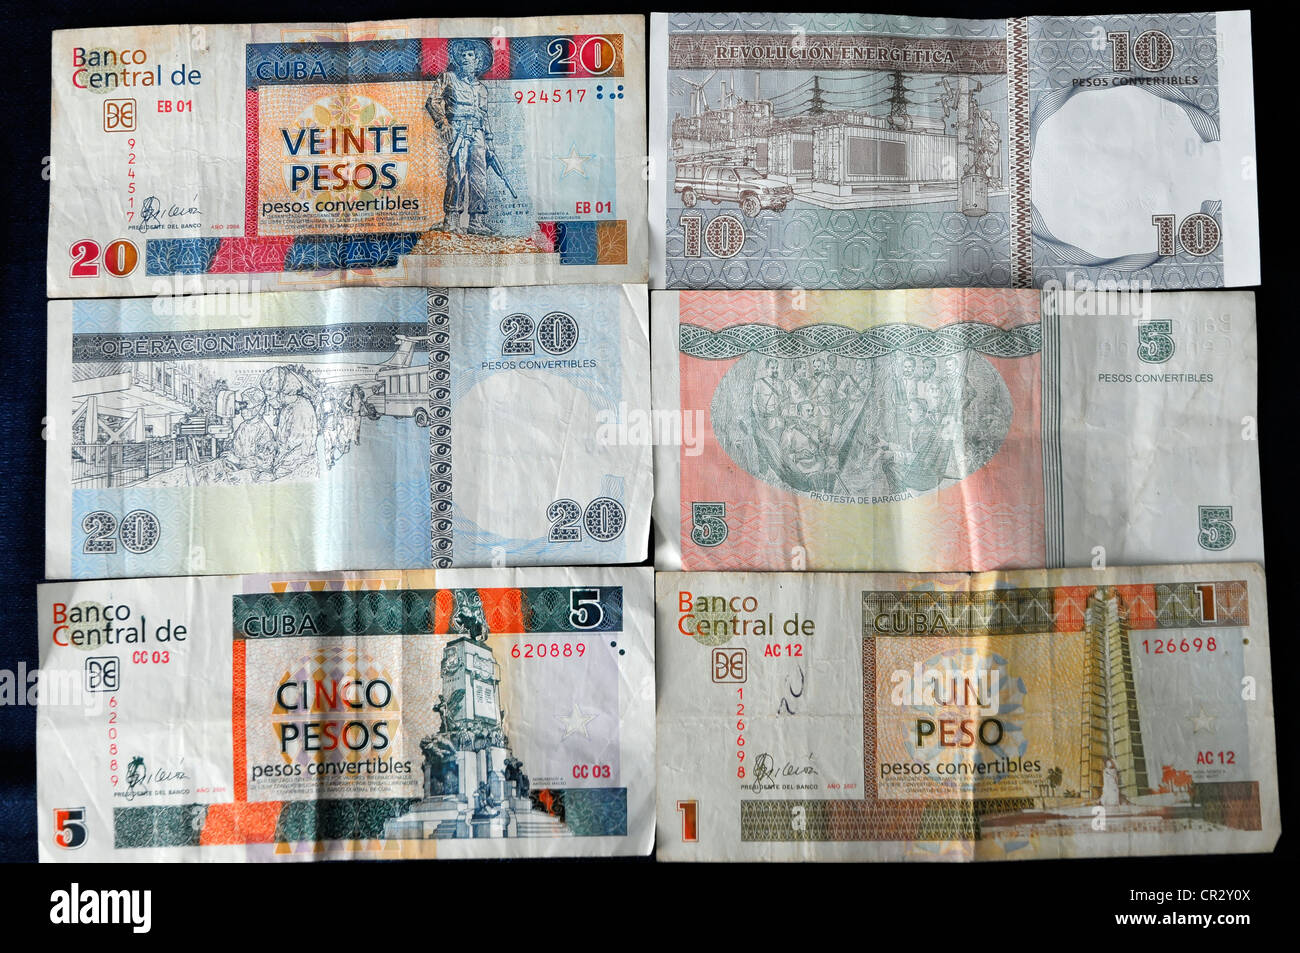 Banconote, peso convertibili, pesos convertibili, note 20, 10, 5, 1 CUC, moneta turistica, Cuba, Antille Maggiori, dei Caraibi Foto Stock